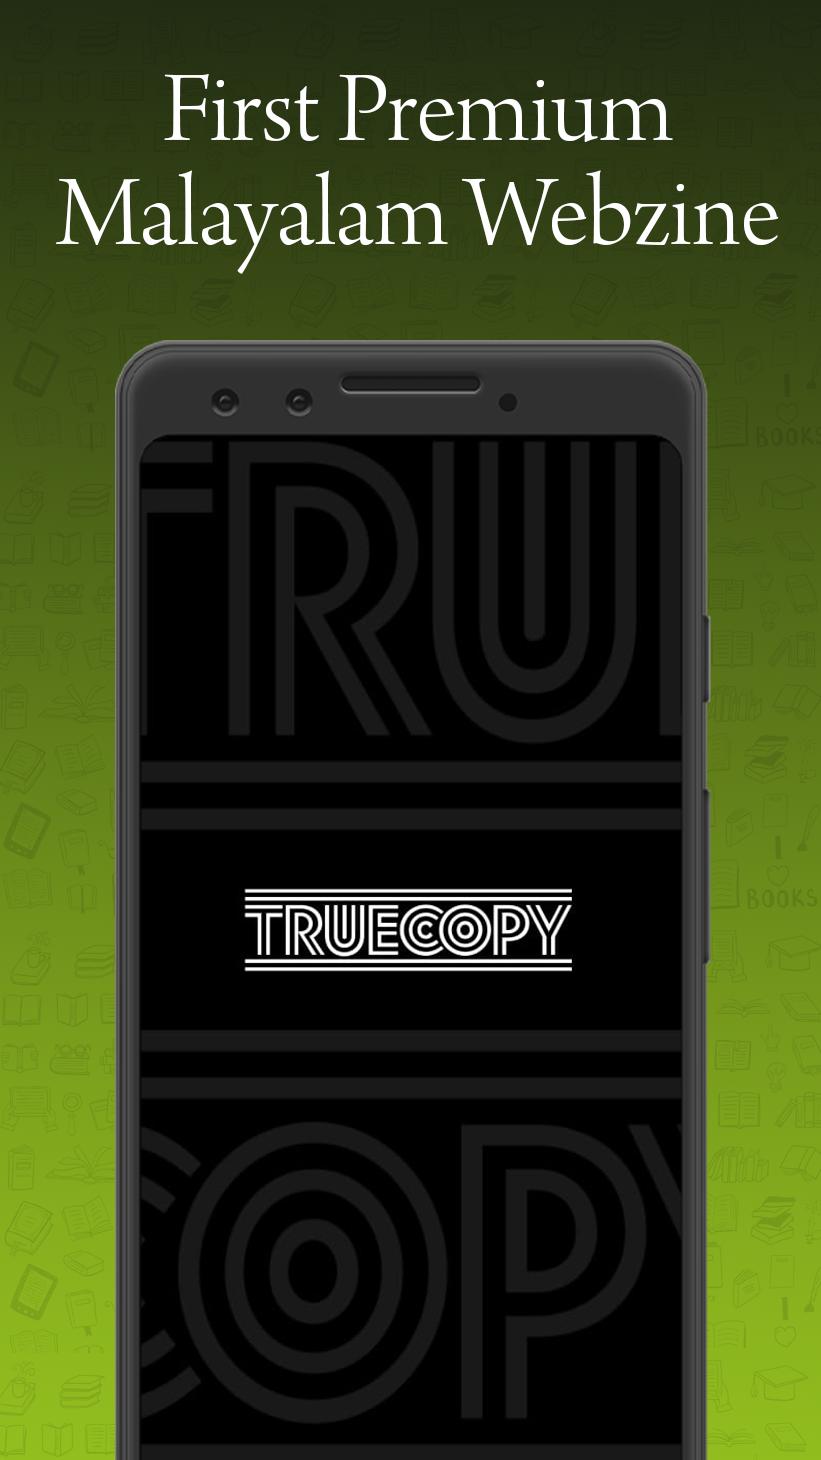 Truecopy Webzine 2.6 Screenshot 15